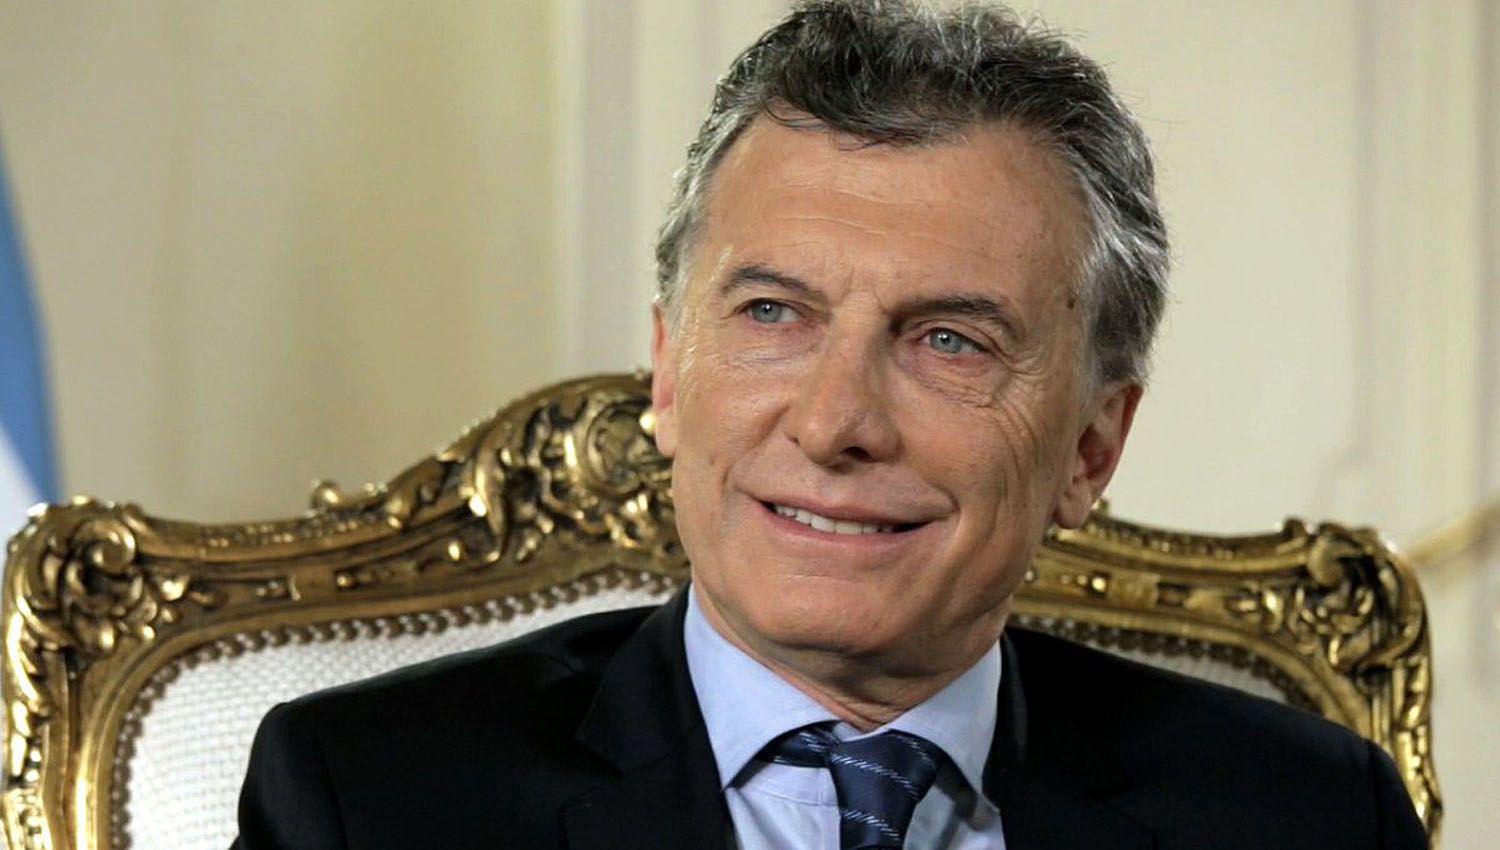 El juez Bava rechazoacute la recusacioacuten de Macri y le fijoacute nueva fecha de indagatoria